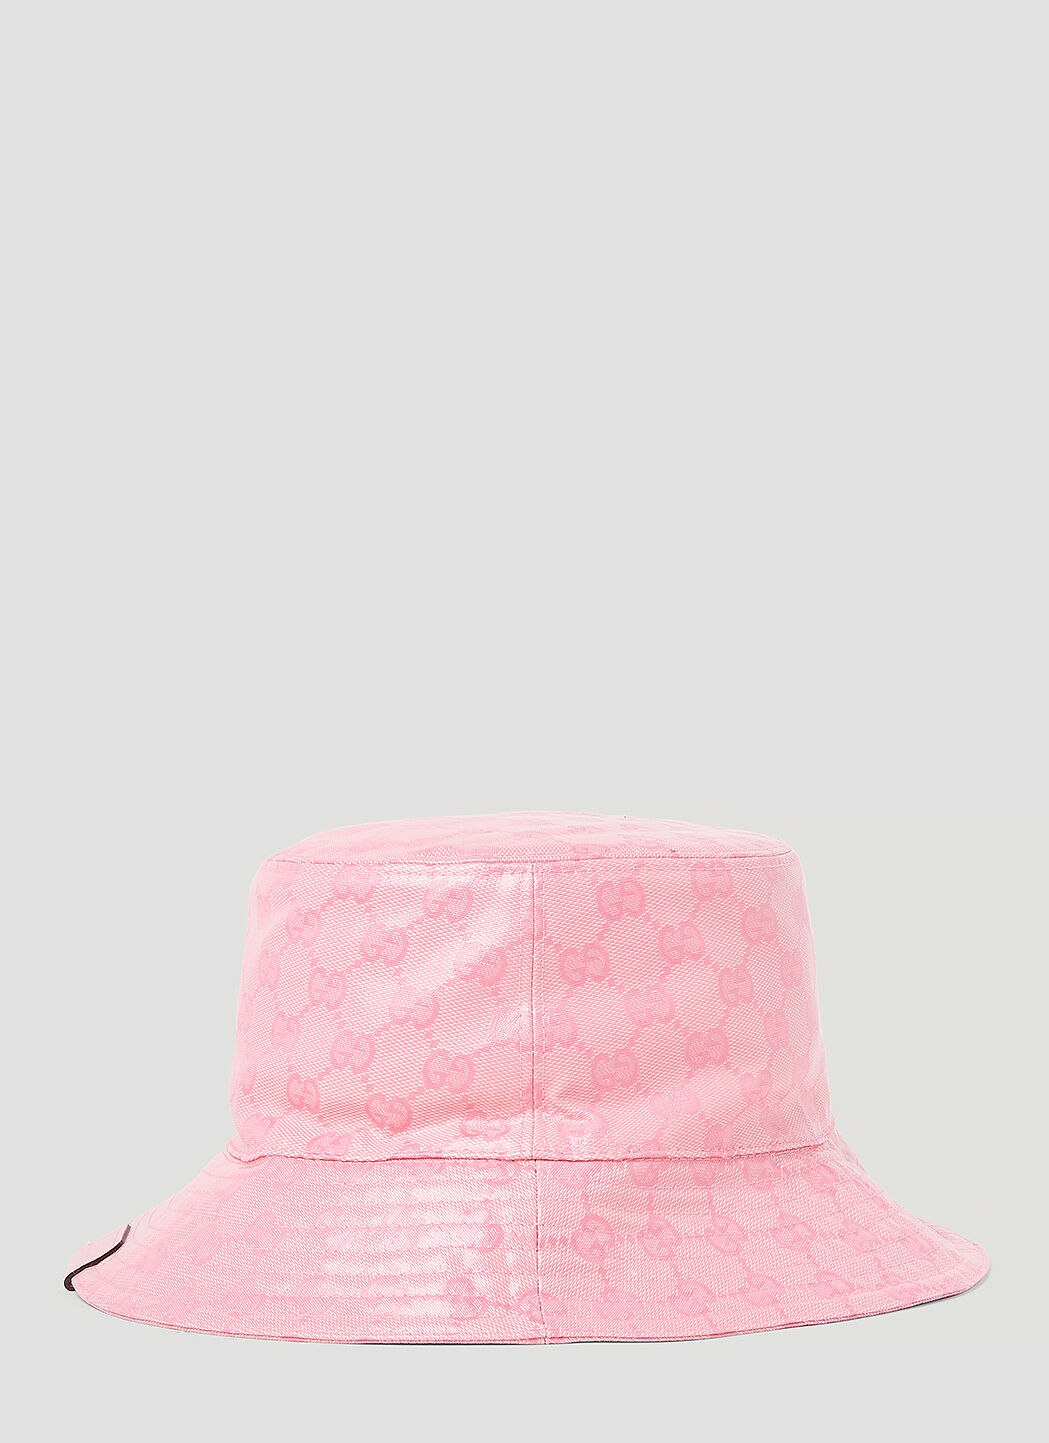 Acne Studios GG 提花渔夫帽 粉色 acn0156032